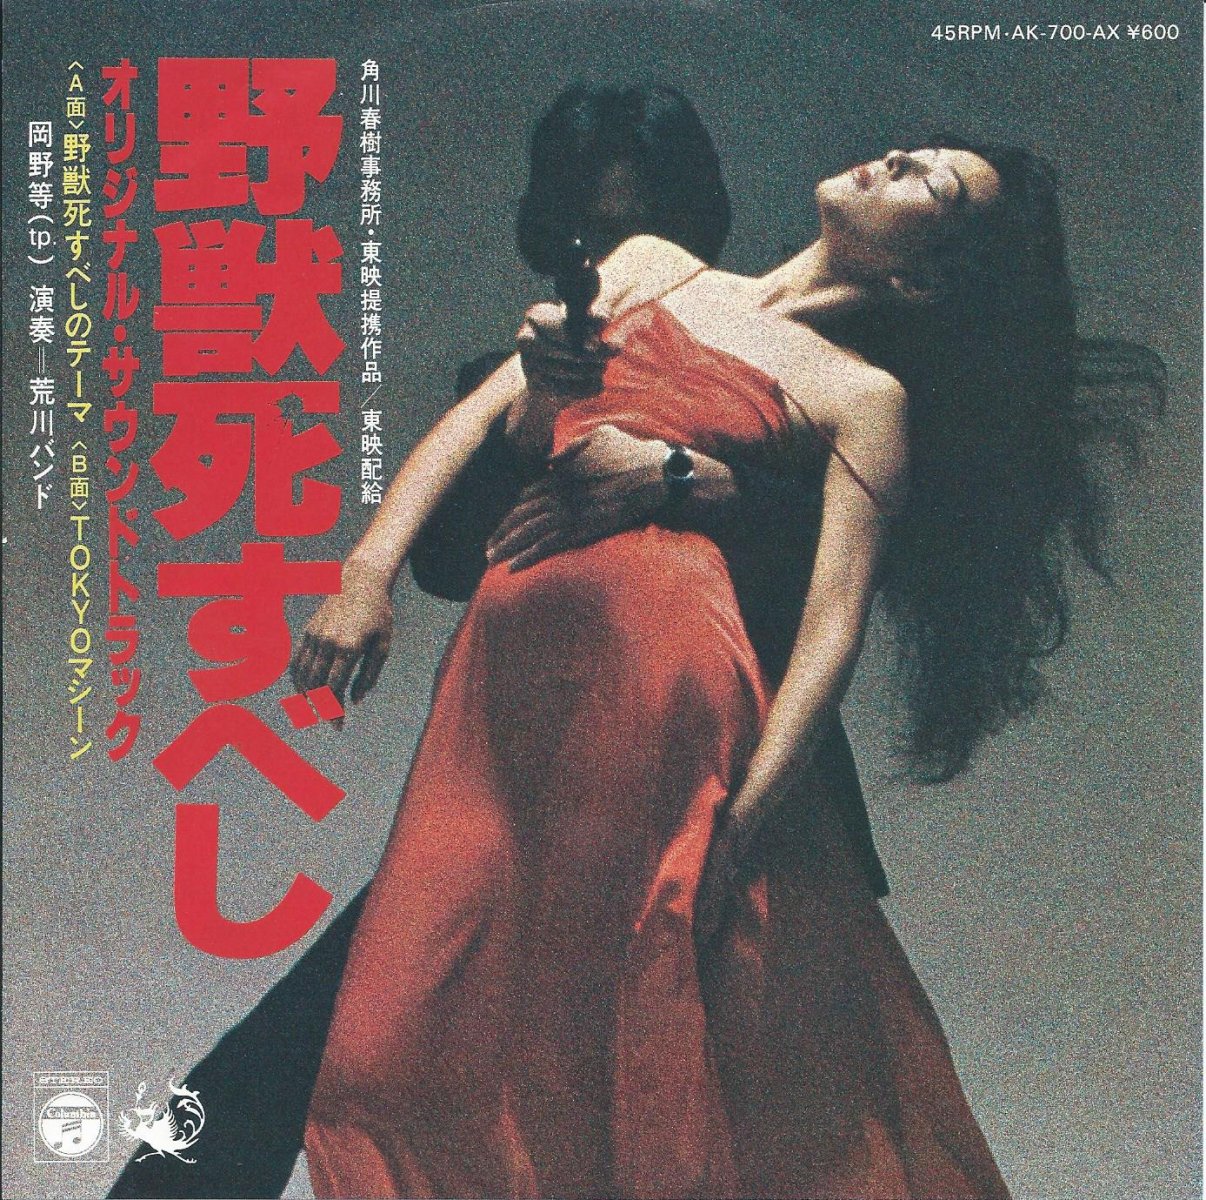 松田優作 野獣死すべし オリジナル・サウンドトラック CD